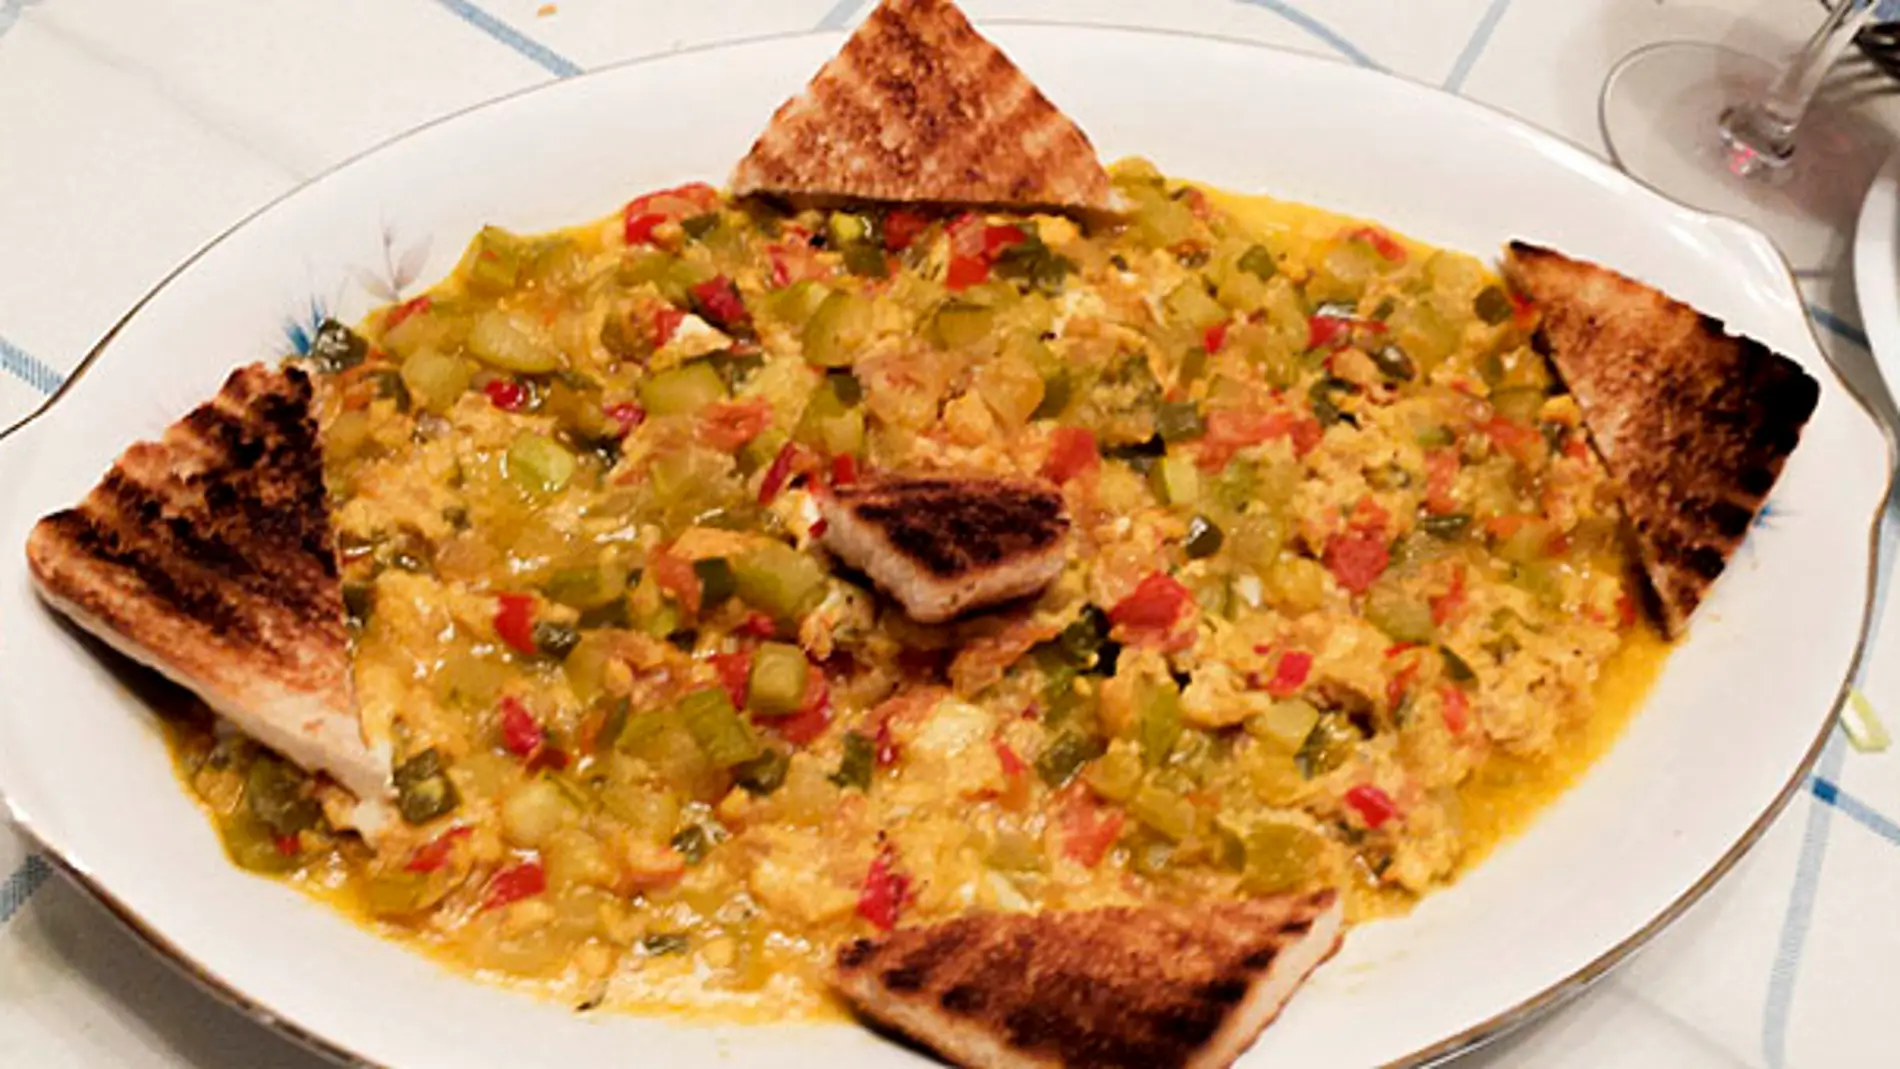 El pisto bilbaíno es uno de los platos más típicos del día a día de la cocina vasca